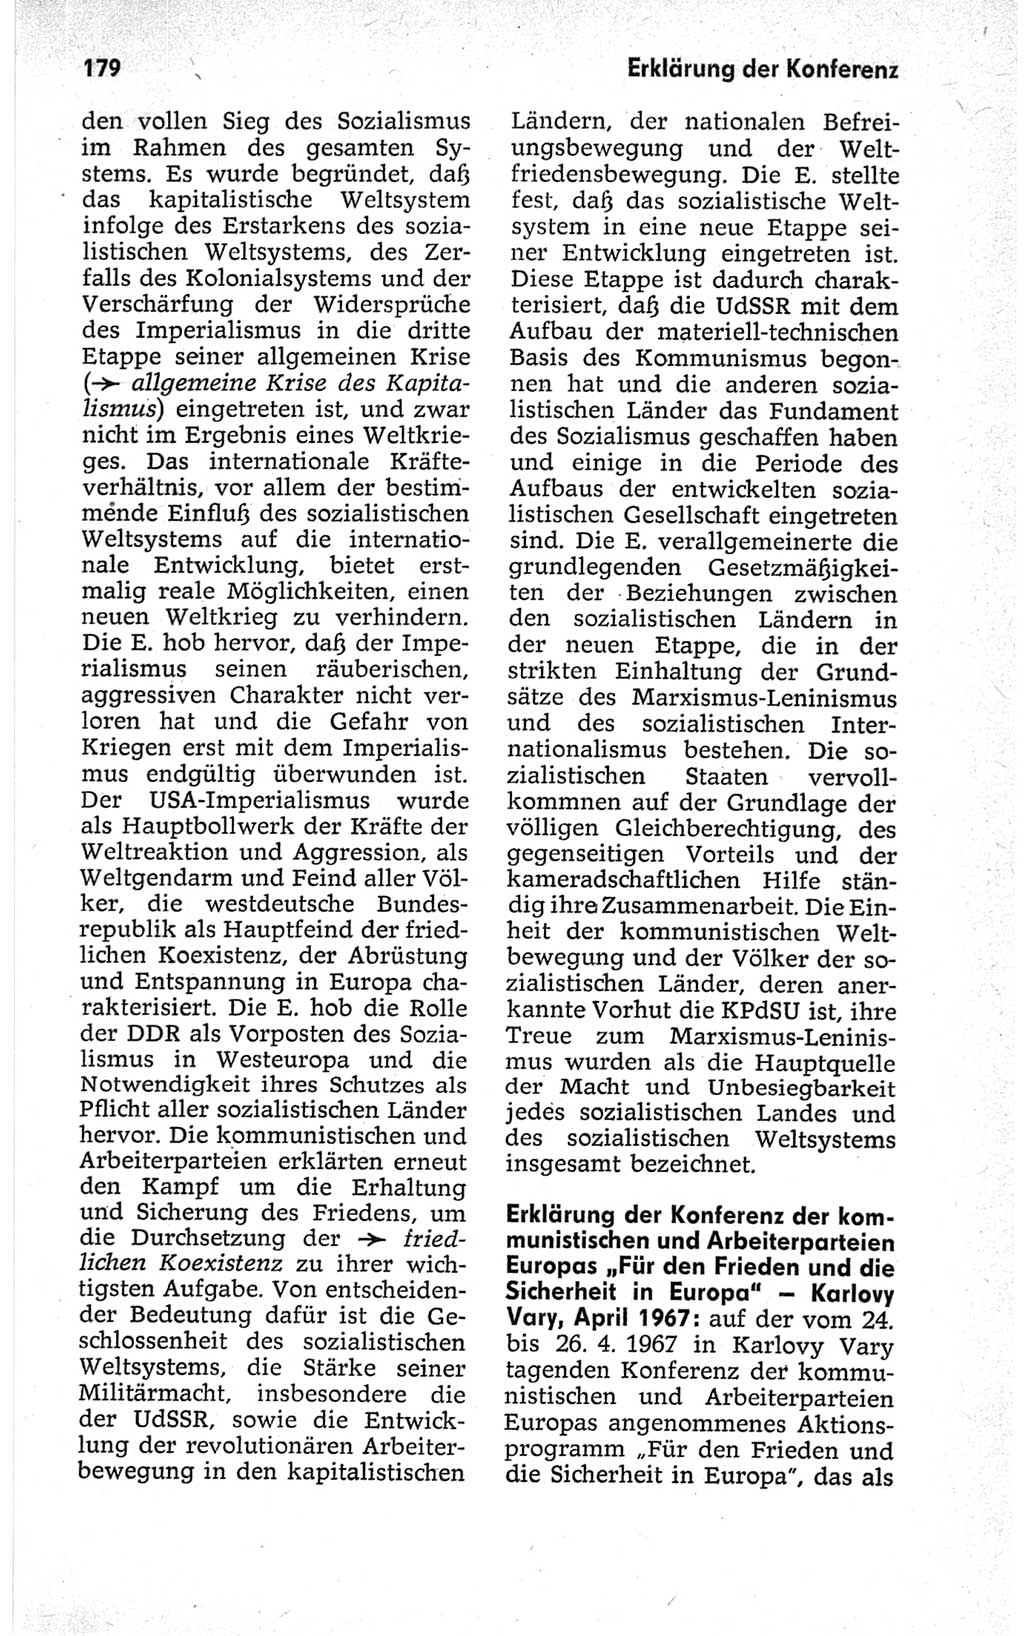 Kleines politisches Wörterbuch [Deutsche Demokratische Republik (DDR)] 1967, Seite 179 (Kl. pol. Wb. DDR 1967, S. 179)